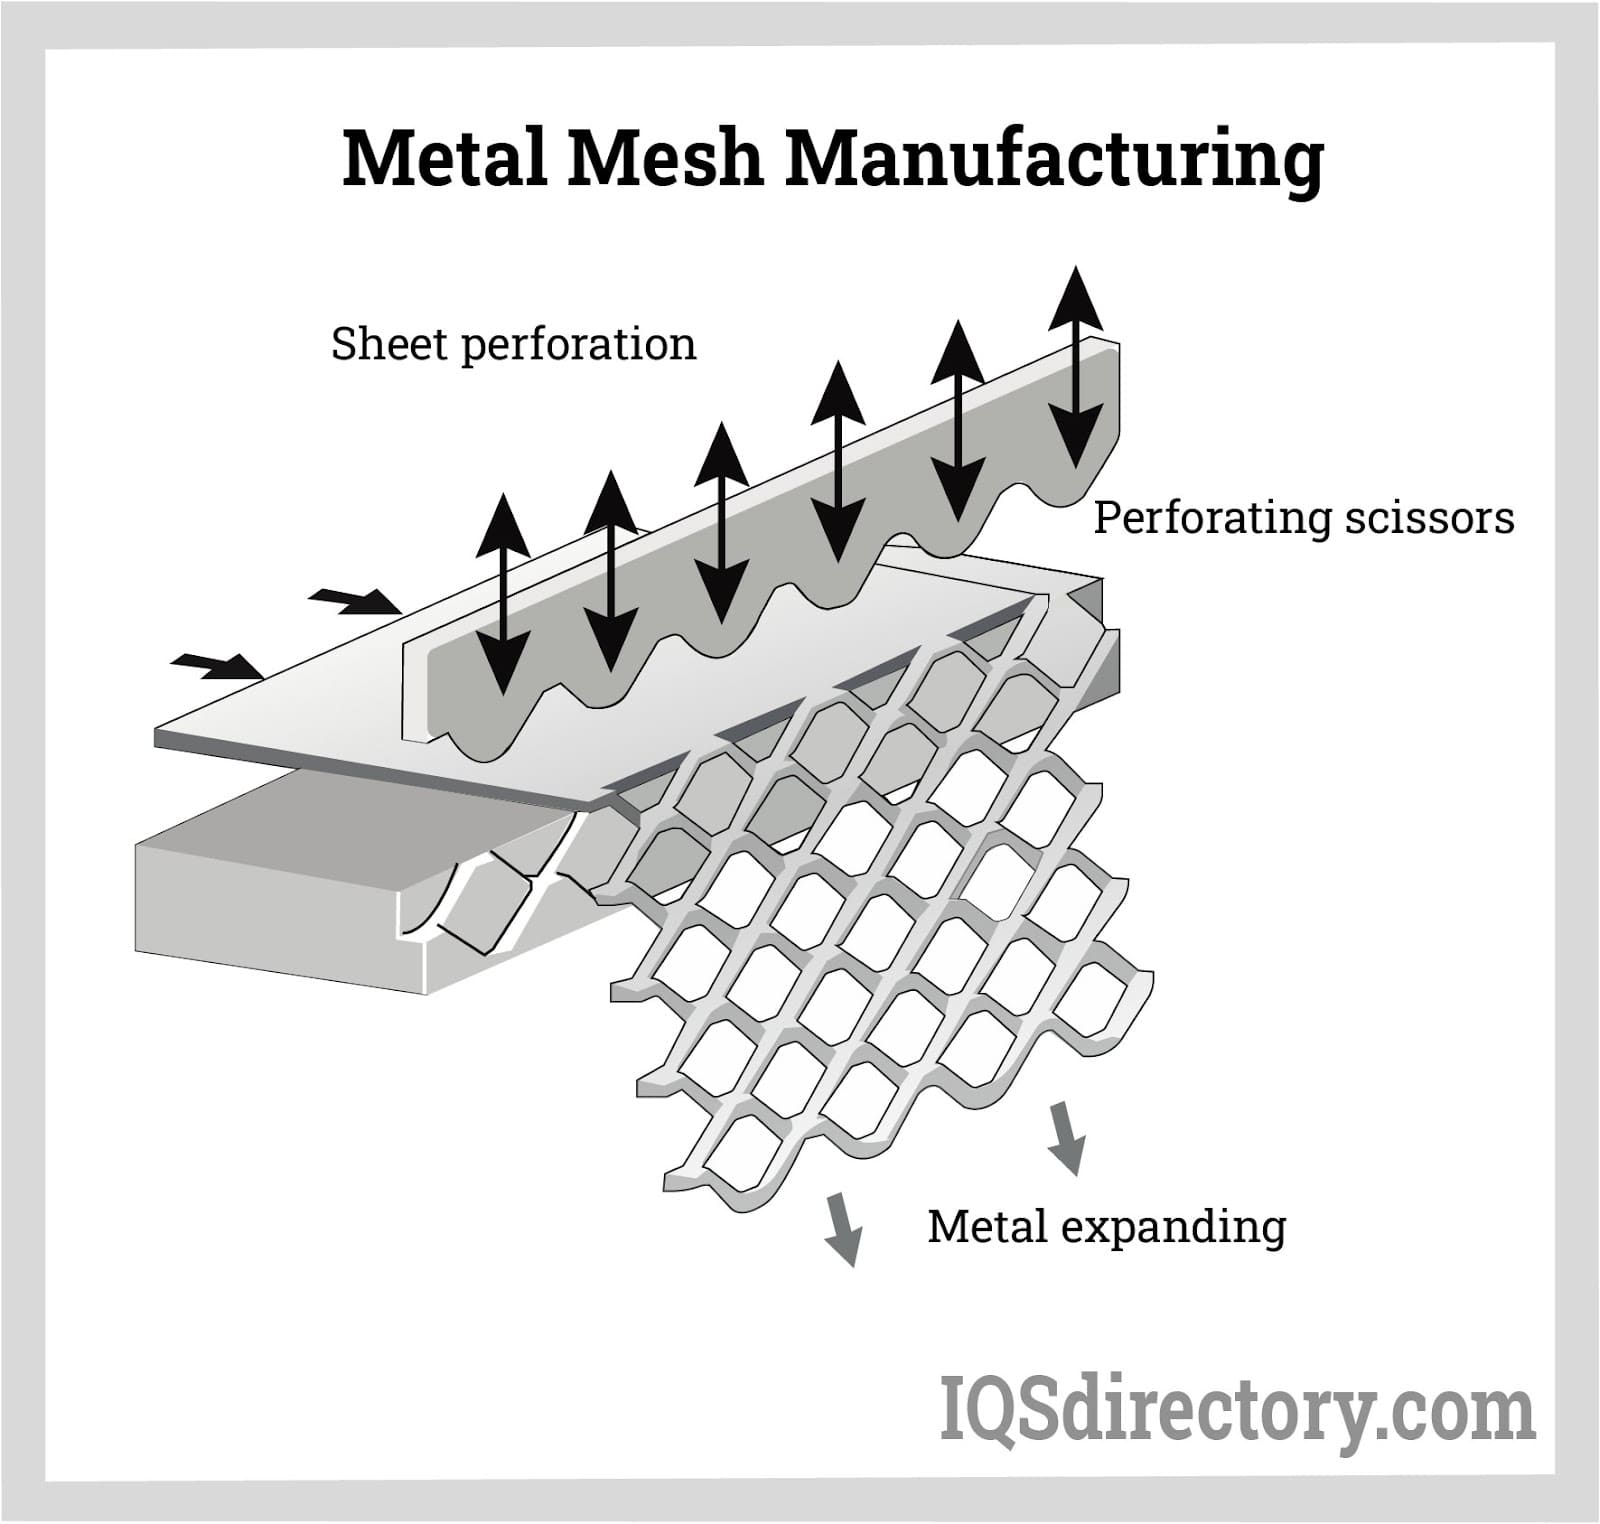 Metal Mesh Manufacturing